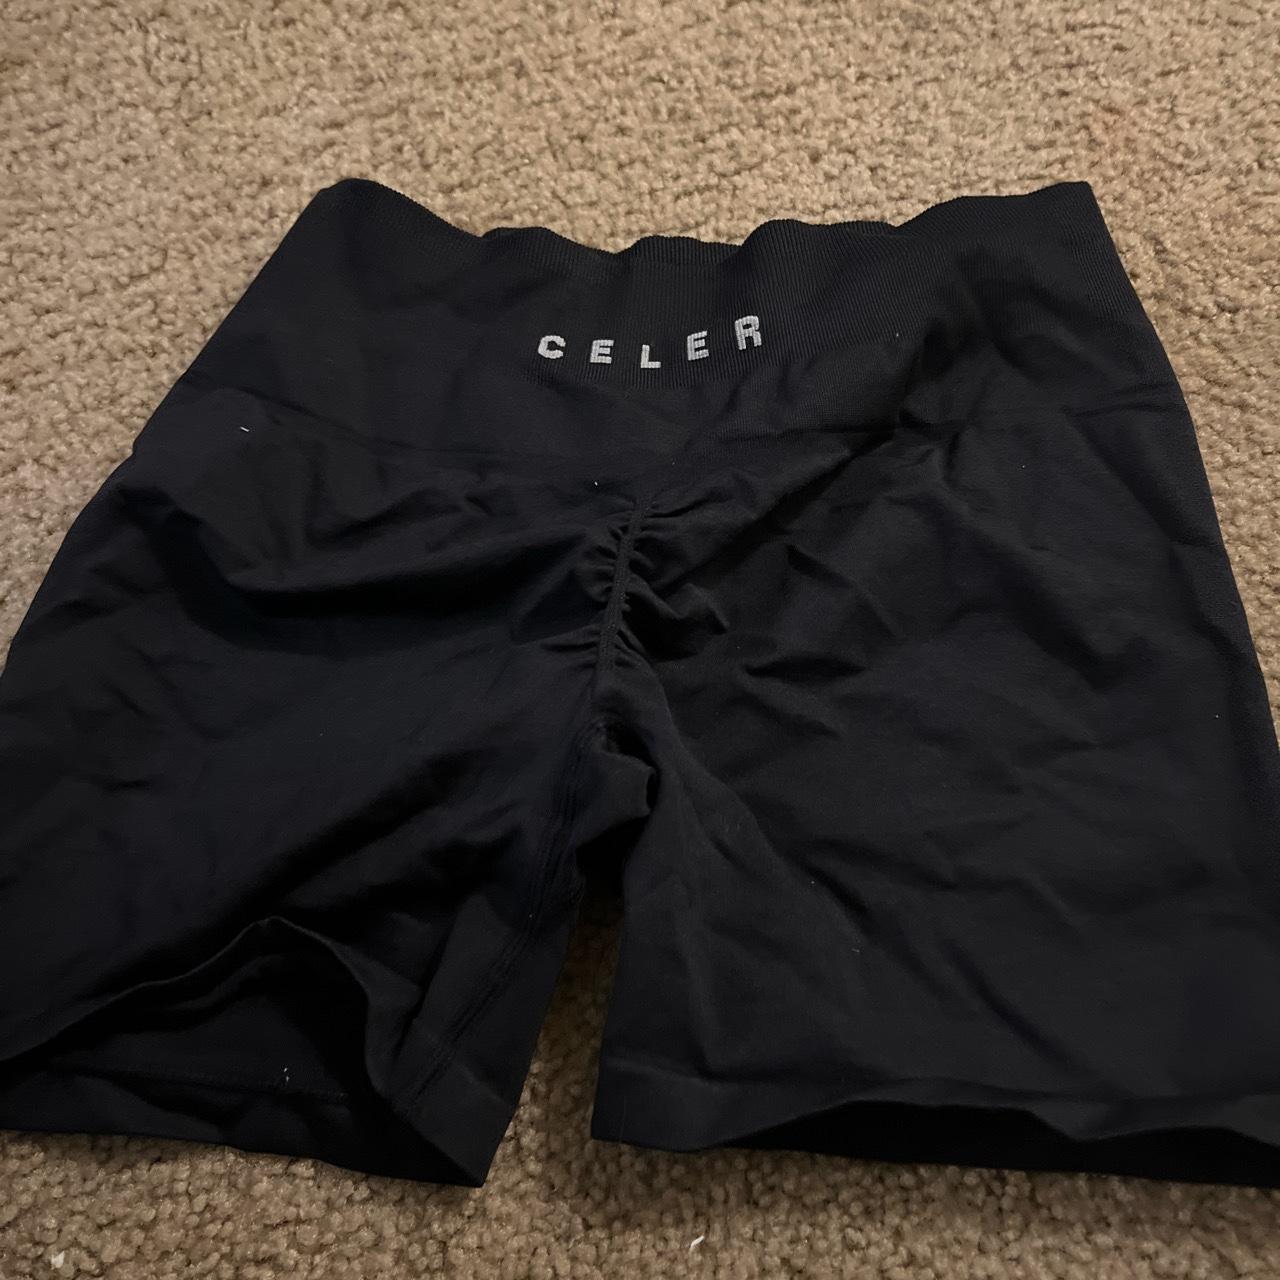 Celer shorts black gym workout  shorts - Depop